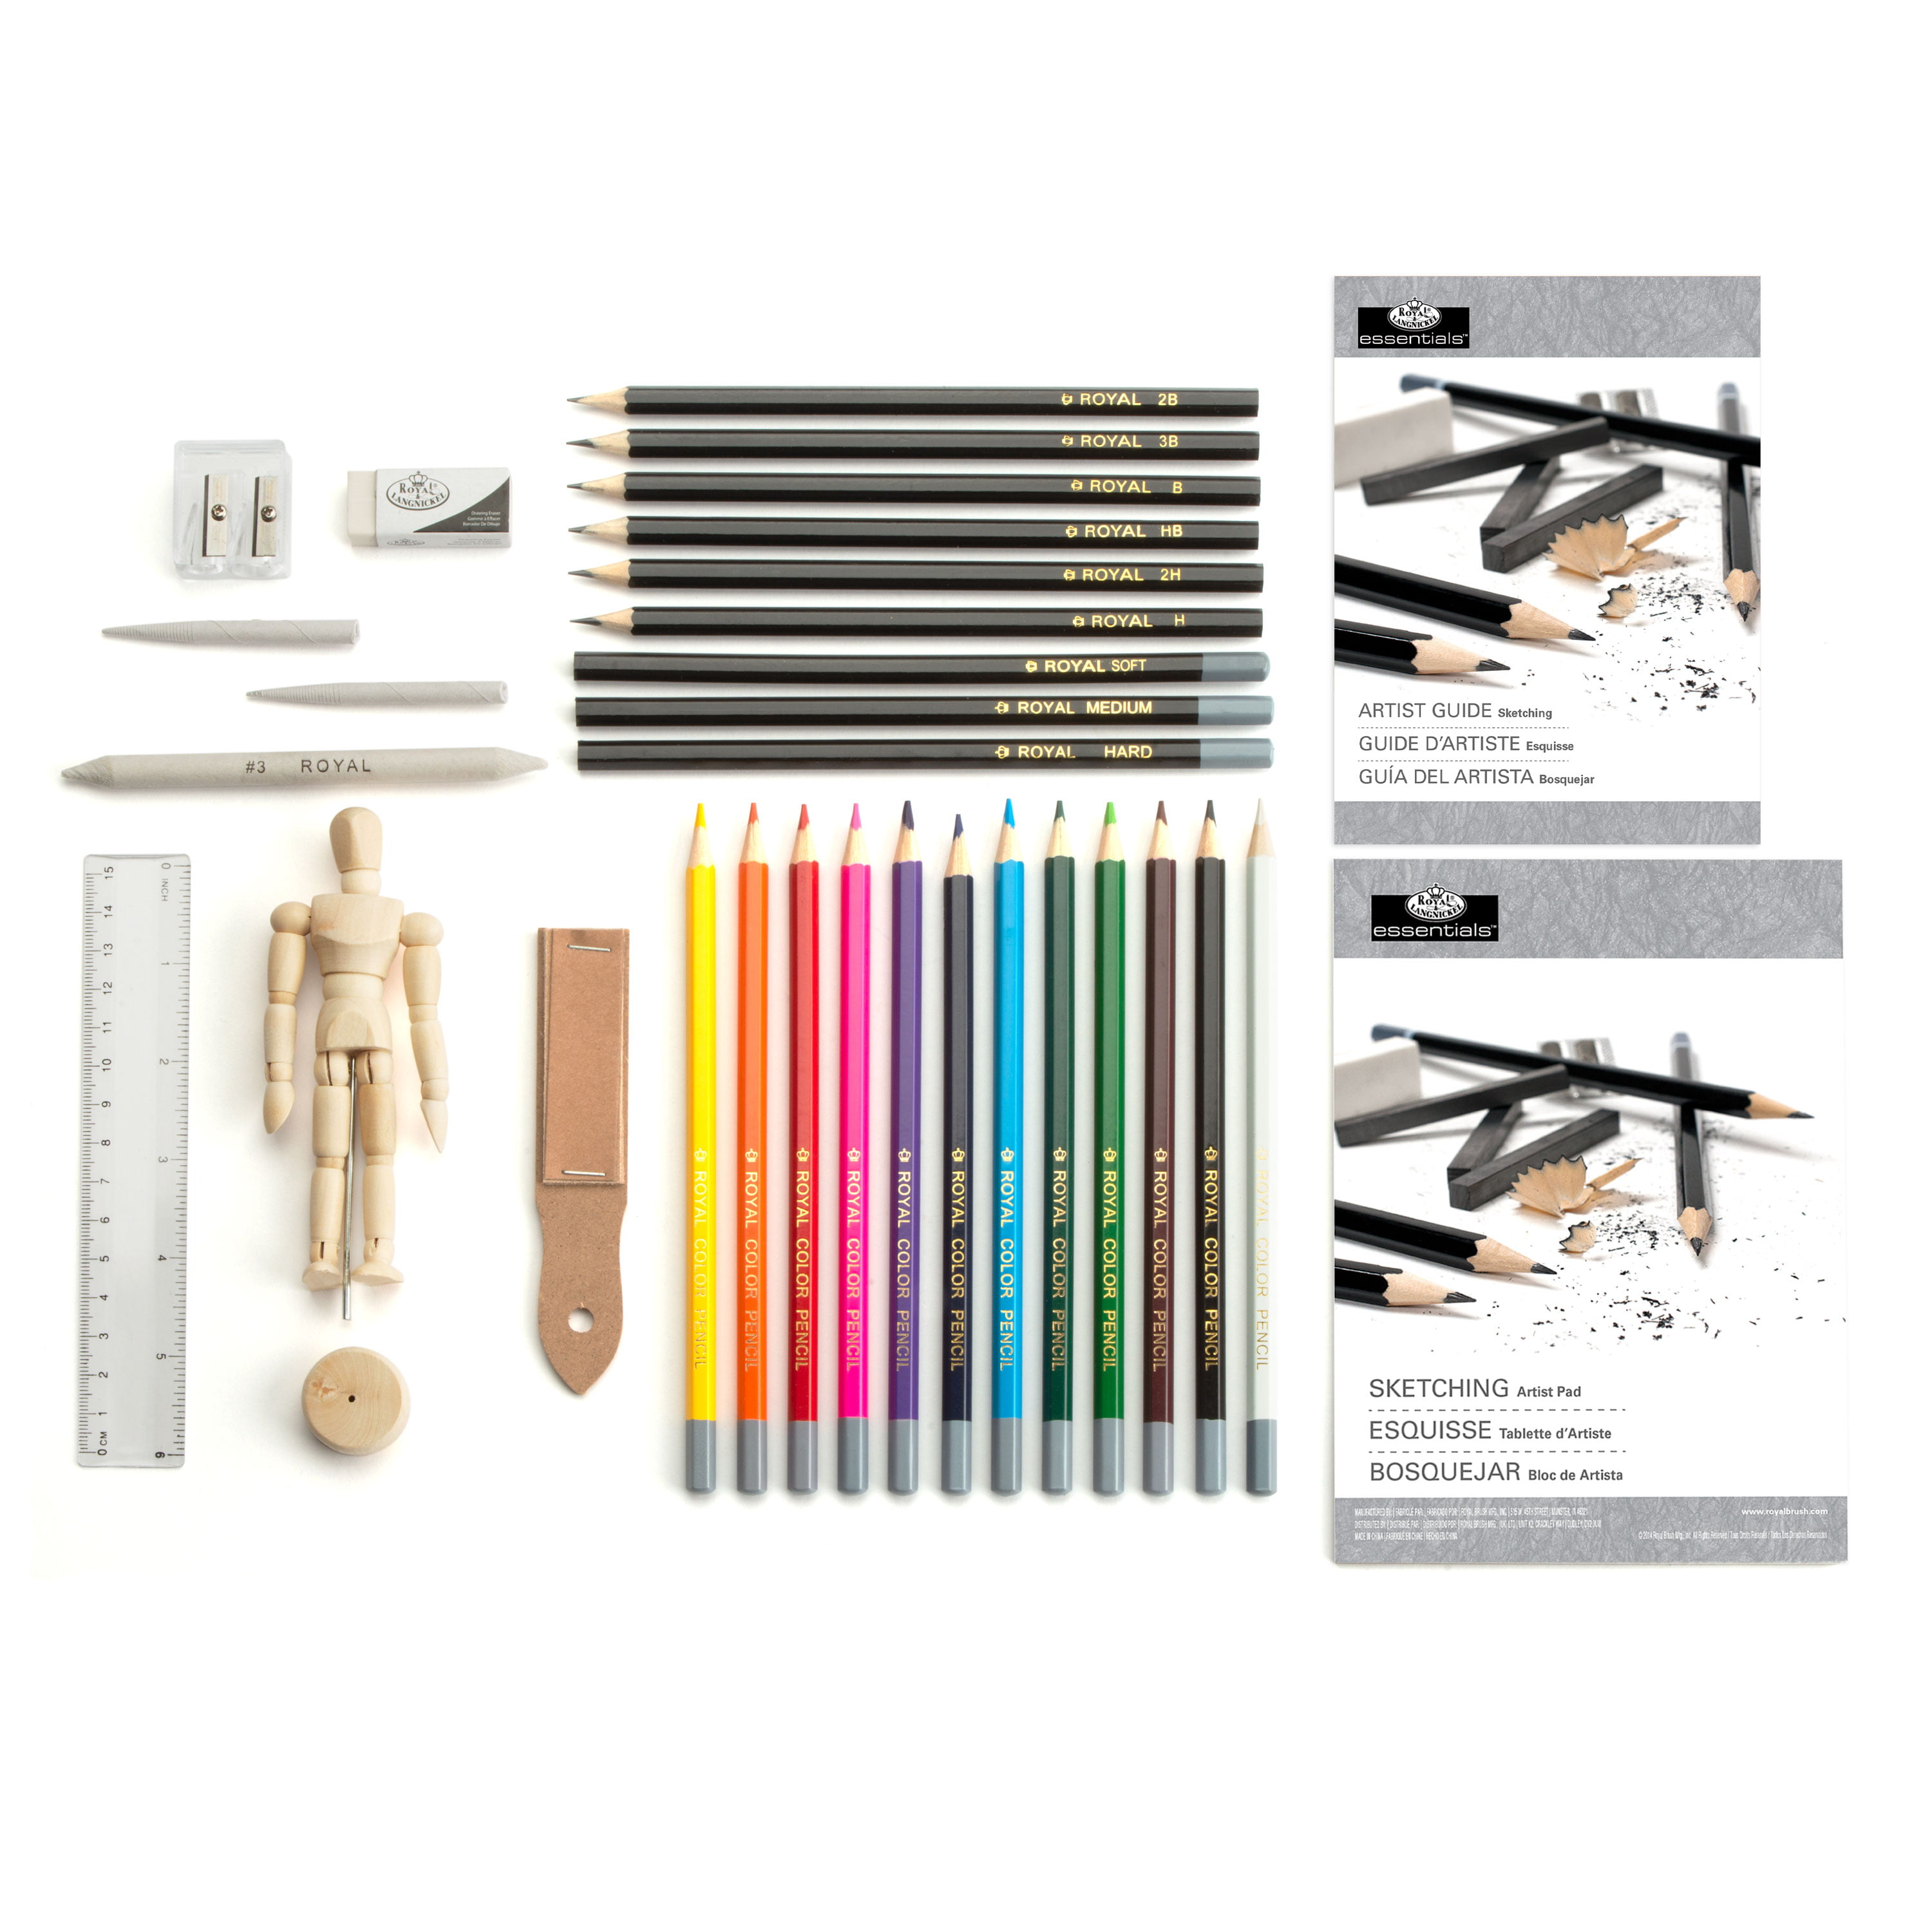 Royal & Langnickel Essentials Sketching Art Set 58pcs - Art